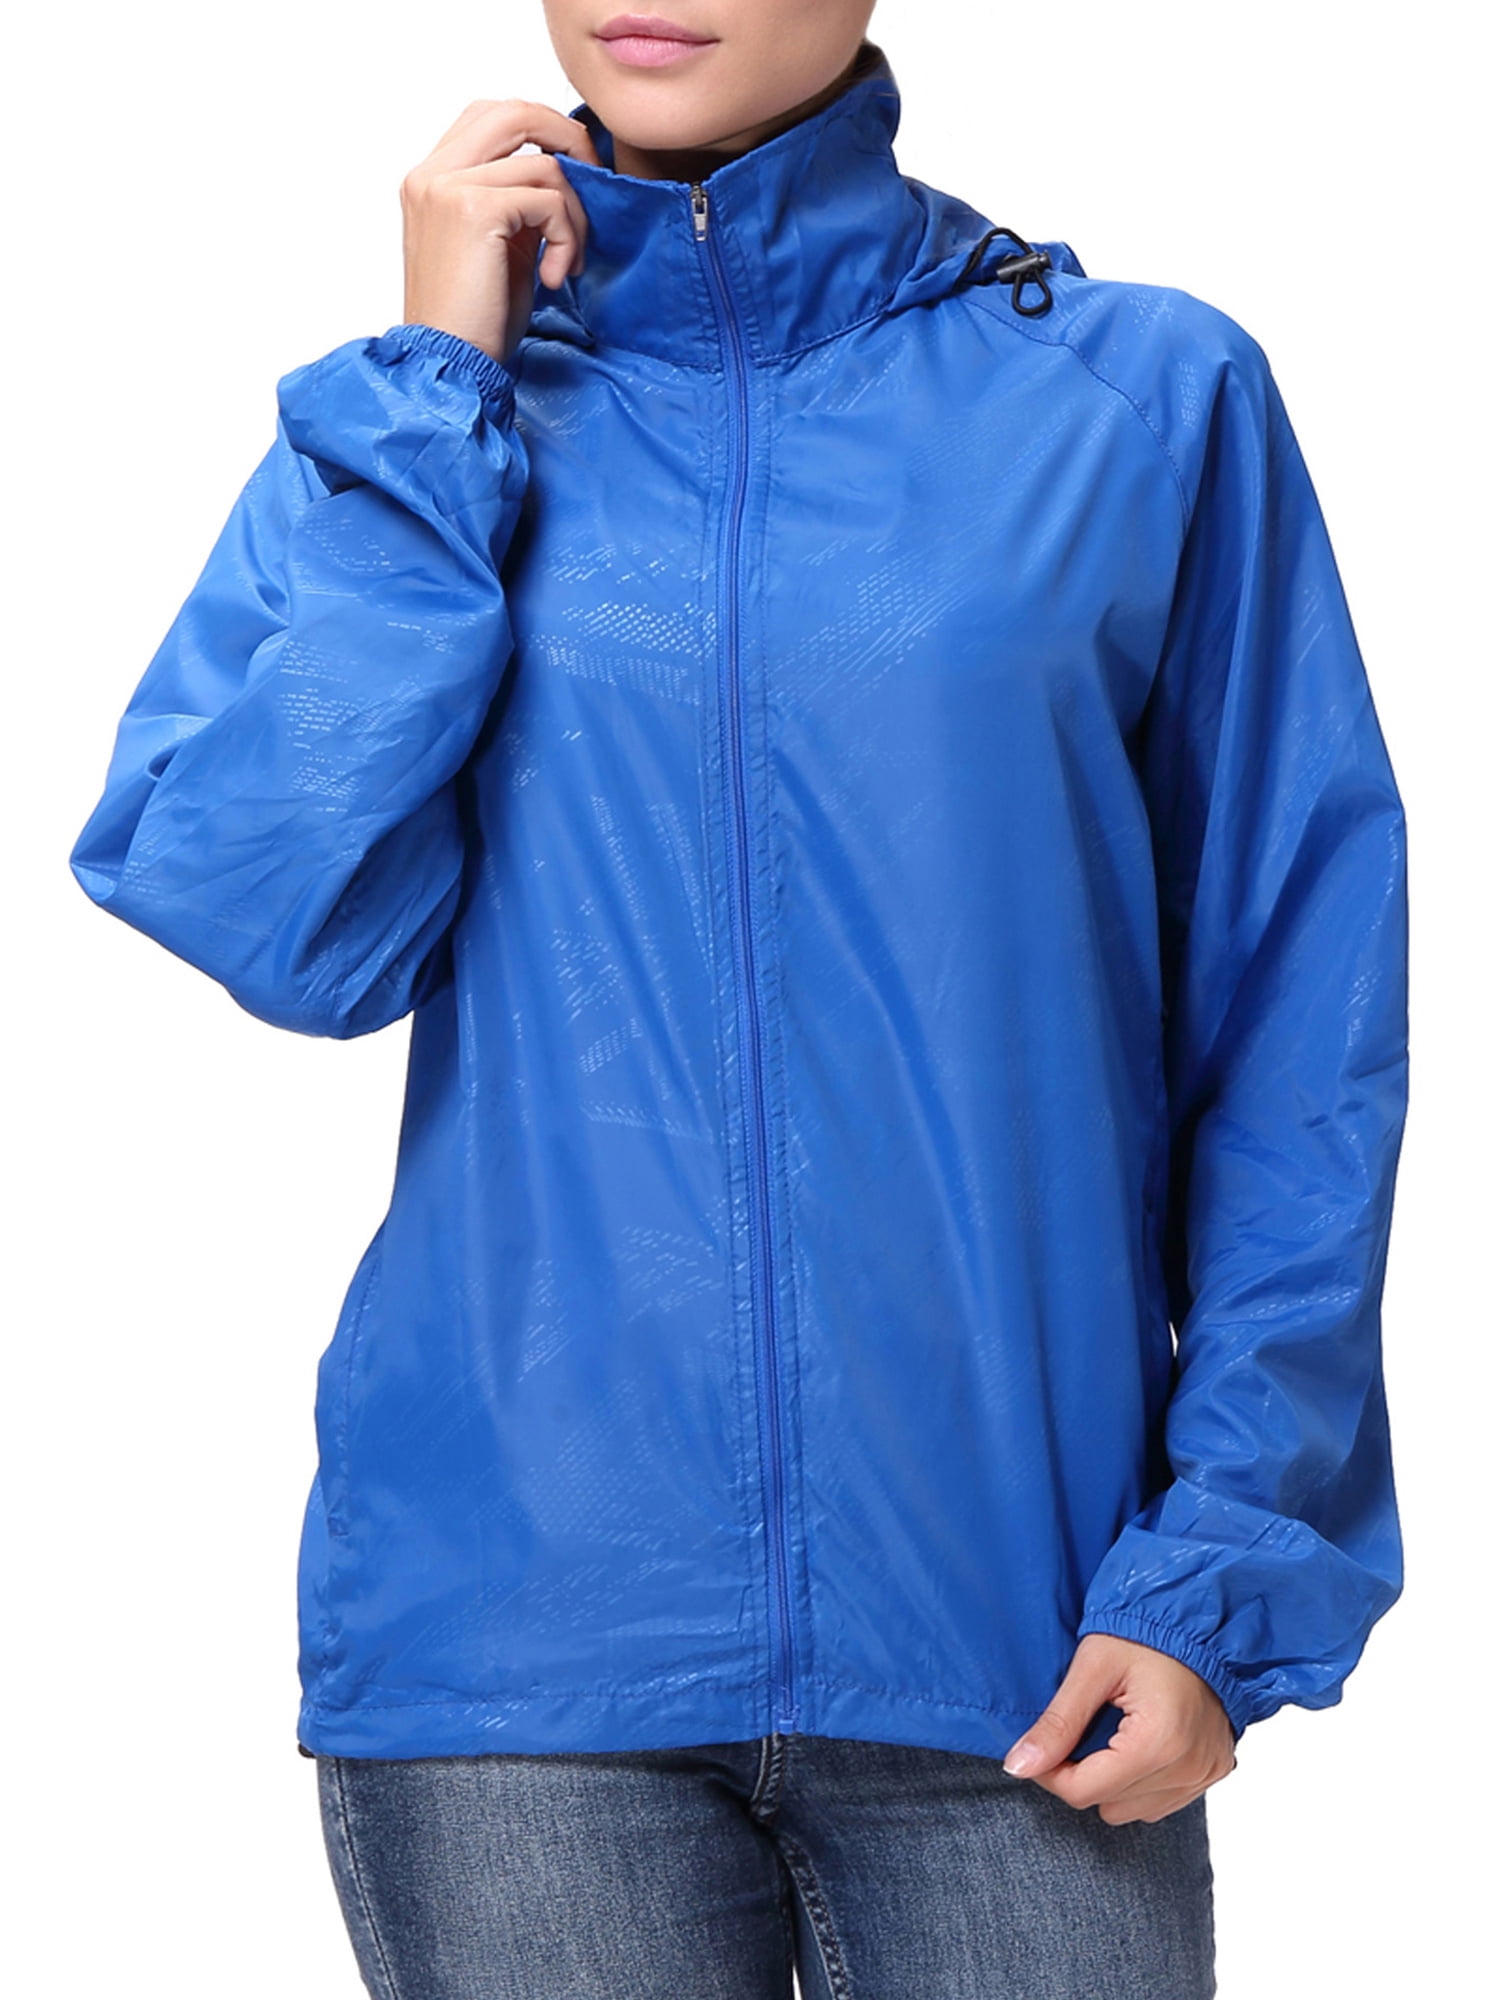 AJF,lightweight packable rain jacket|OFF 73%|www ...